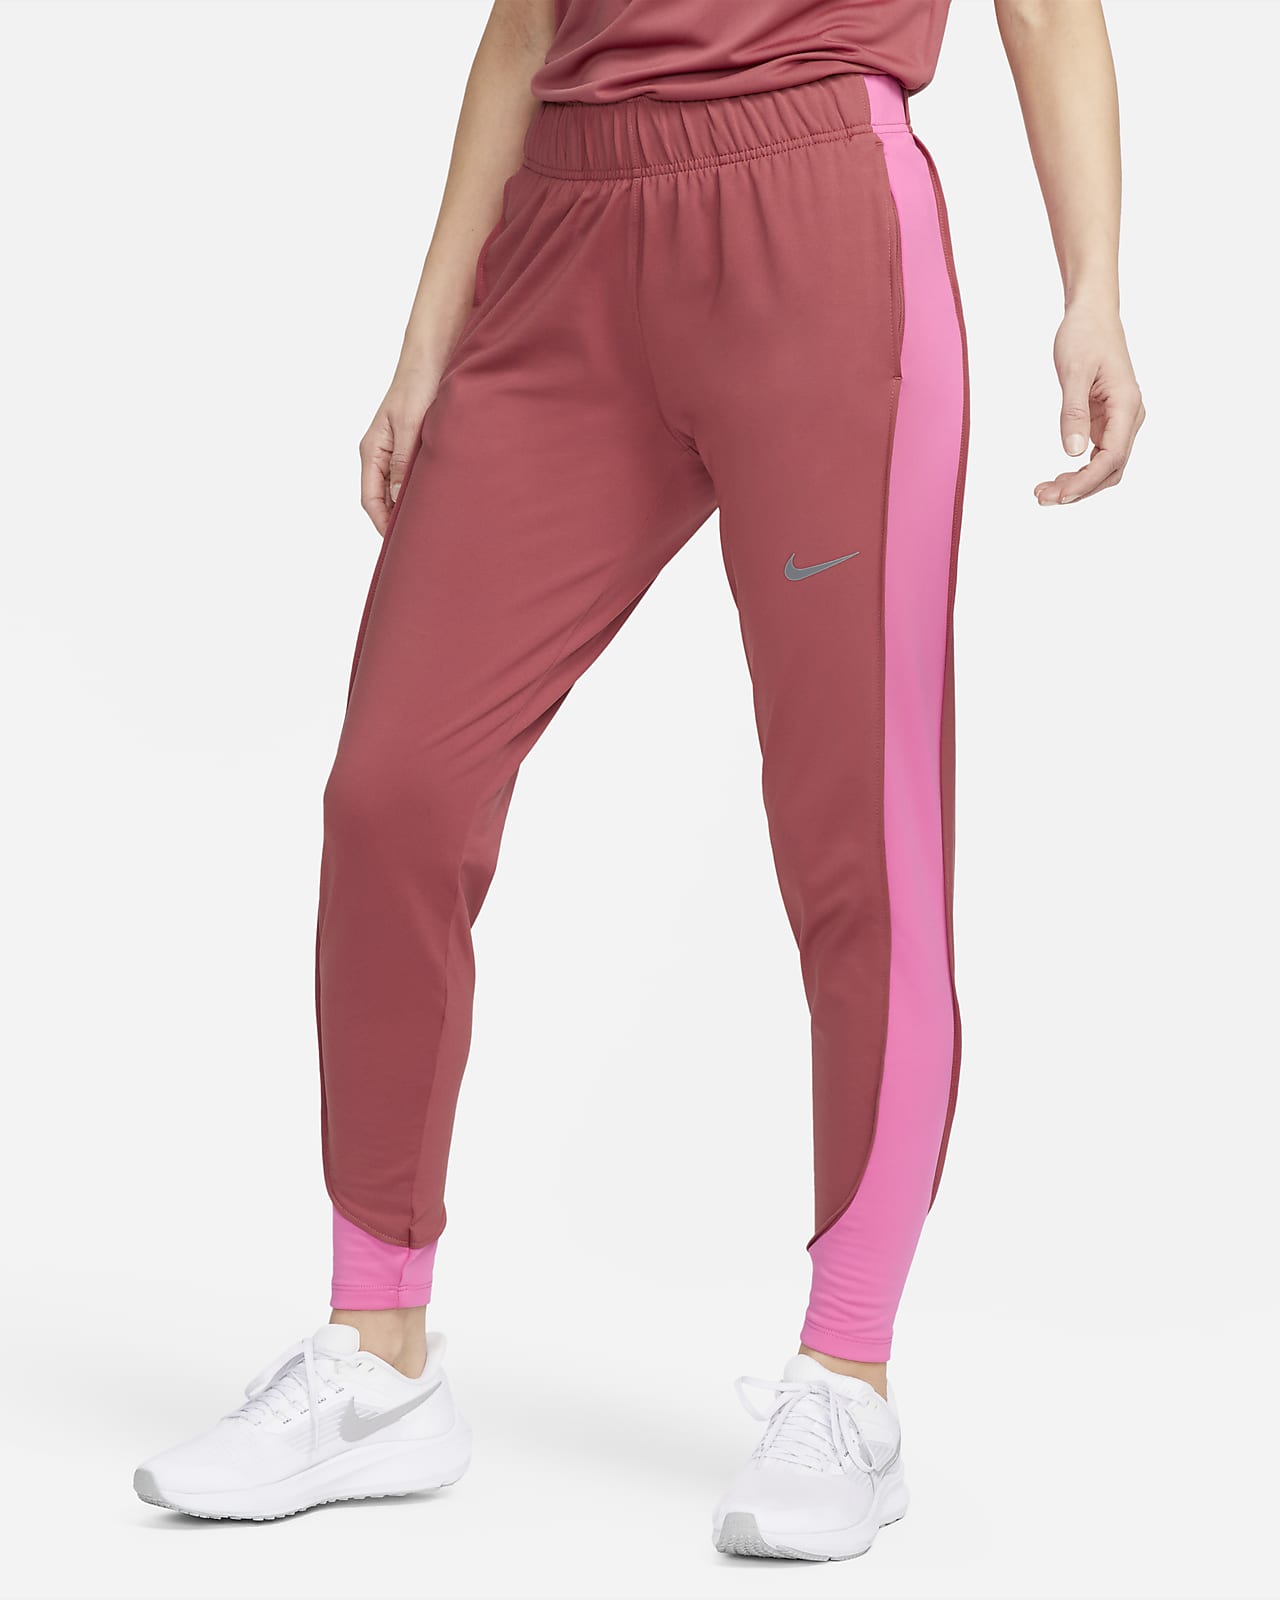 Pantalones de running para Nike Therma-FIT Nike.com